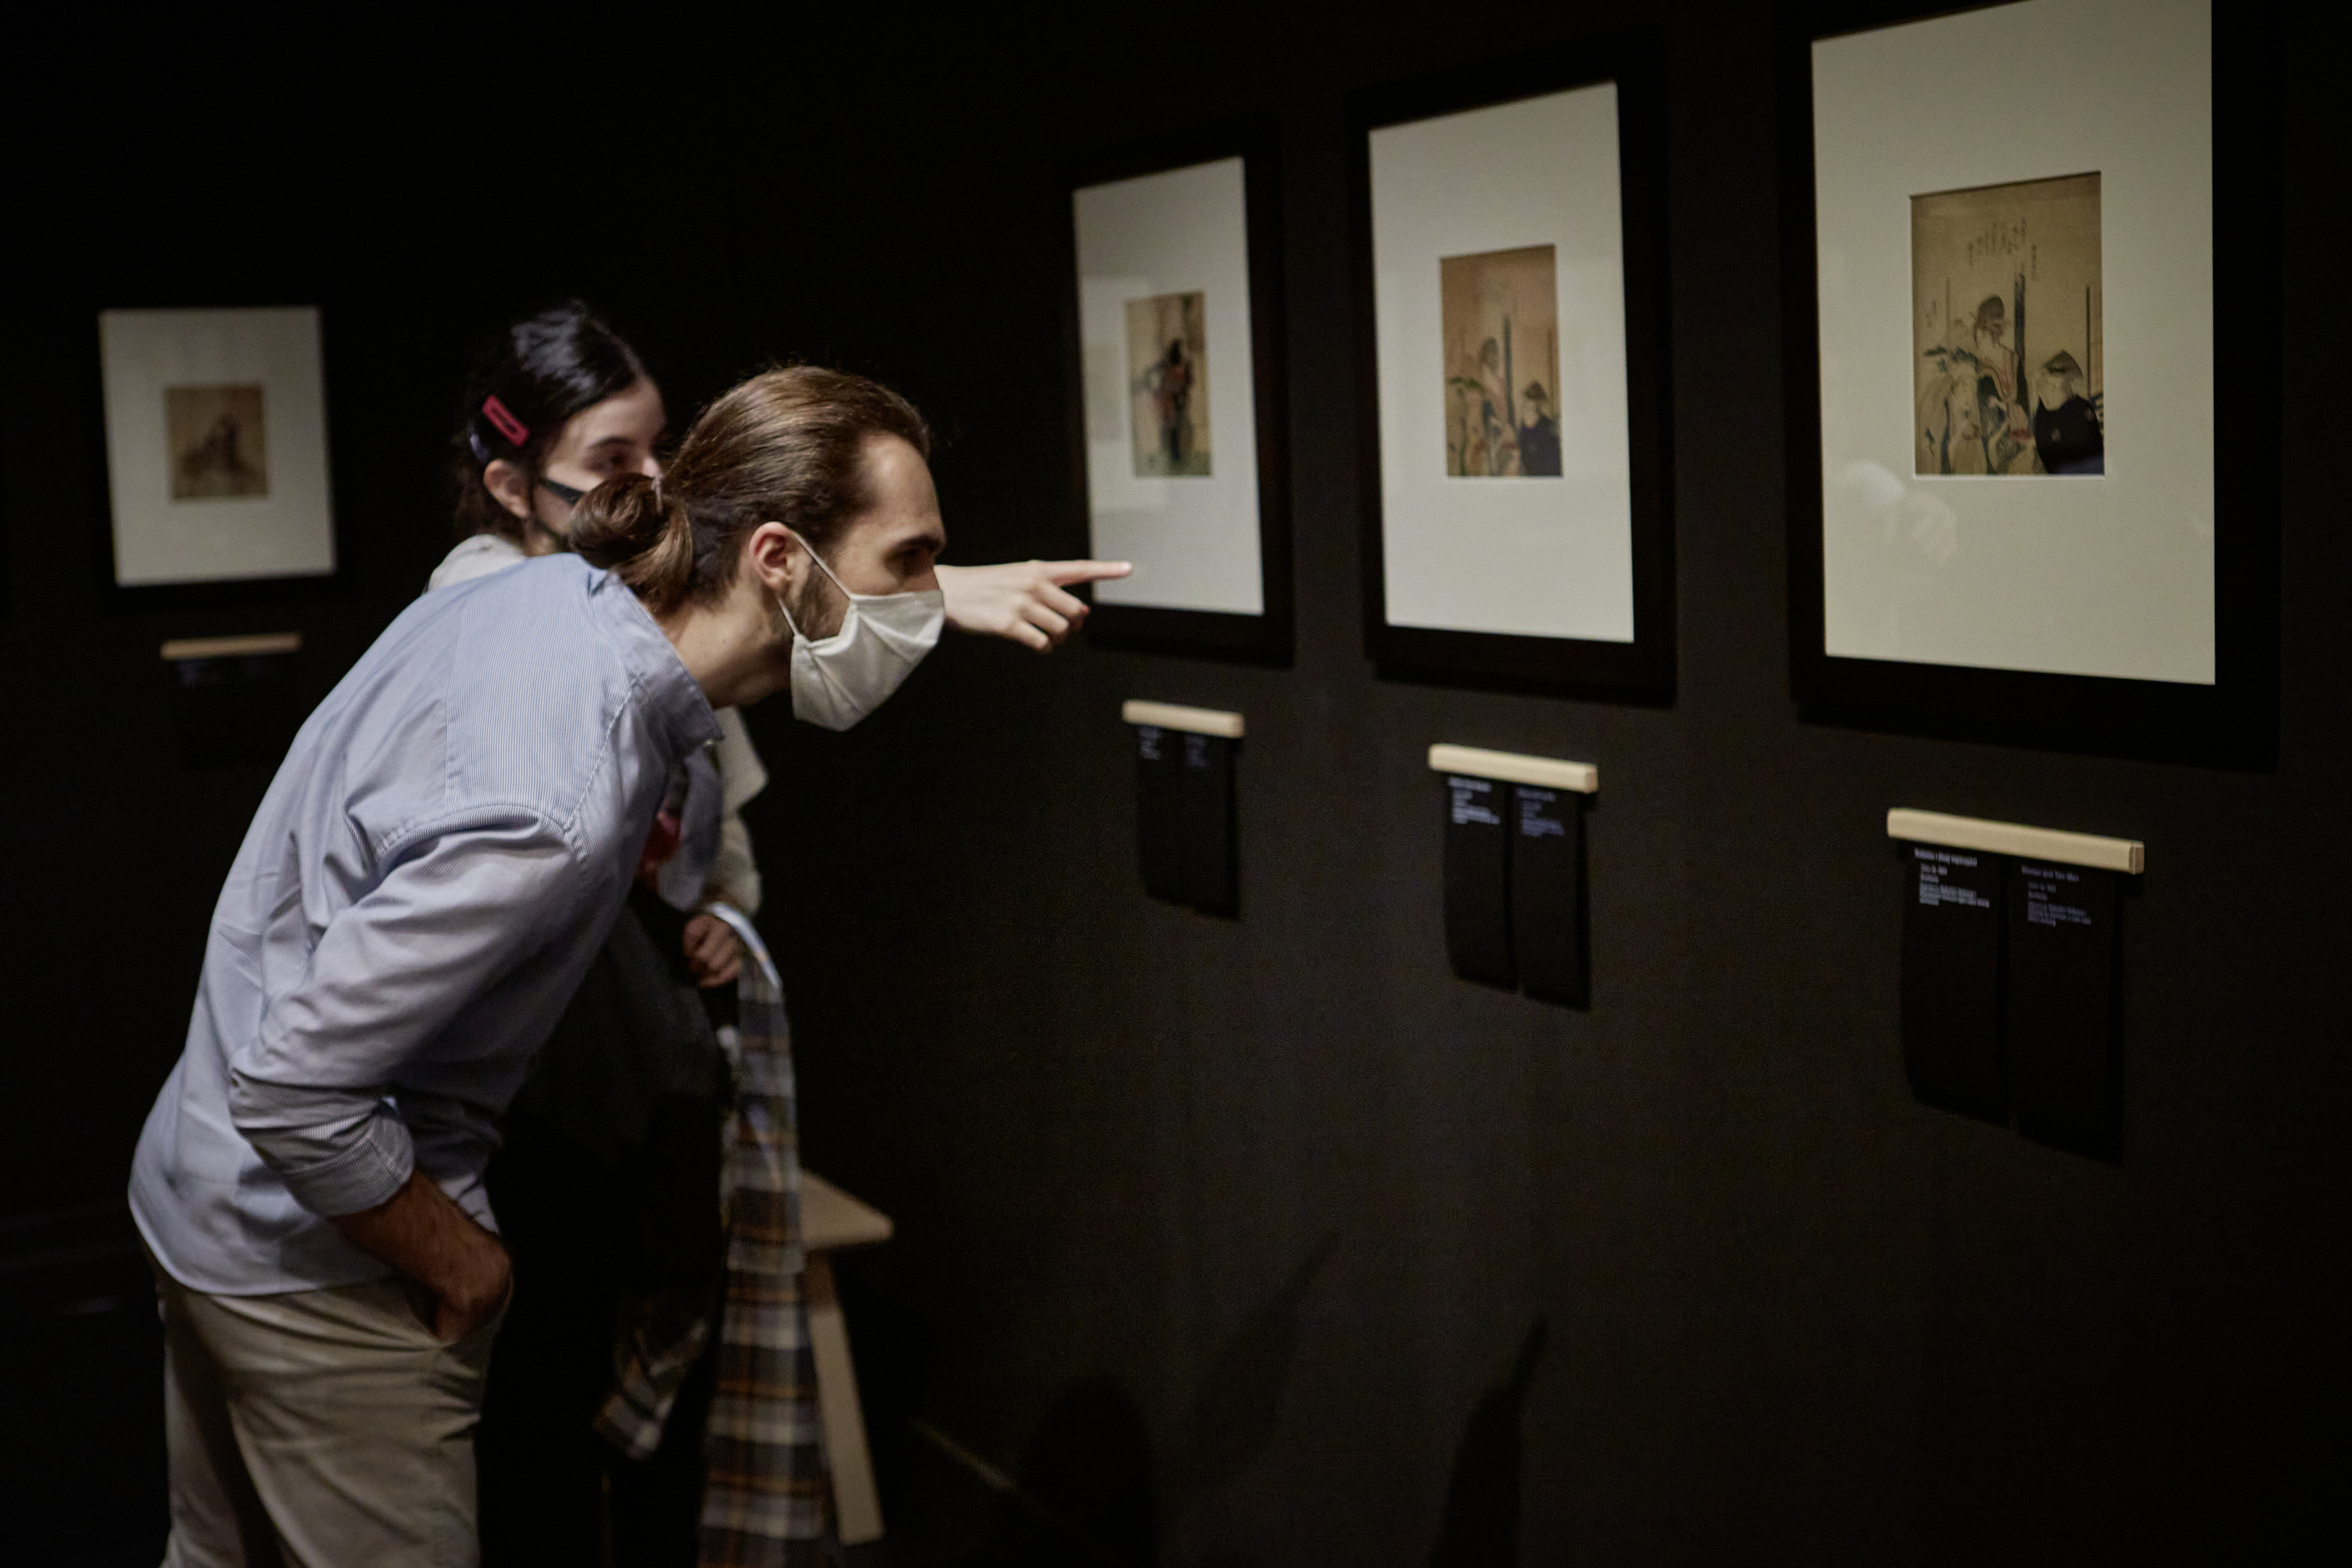 Dwójka uczestników projektu “Spektrum” zwiedza wystawę Hokusaia. Młoda kobieta wskazuje palcem na drzeworyt przedstawiający kobietę i dwóch mężczyzn, a stojący przed nią chłopak schyla się, by przeczytać podpis pod innym drzeworytem.